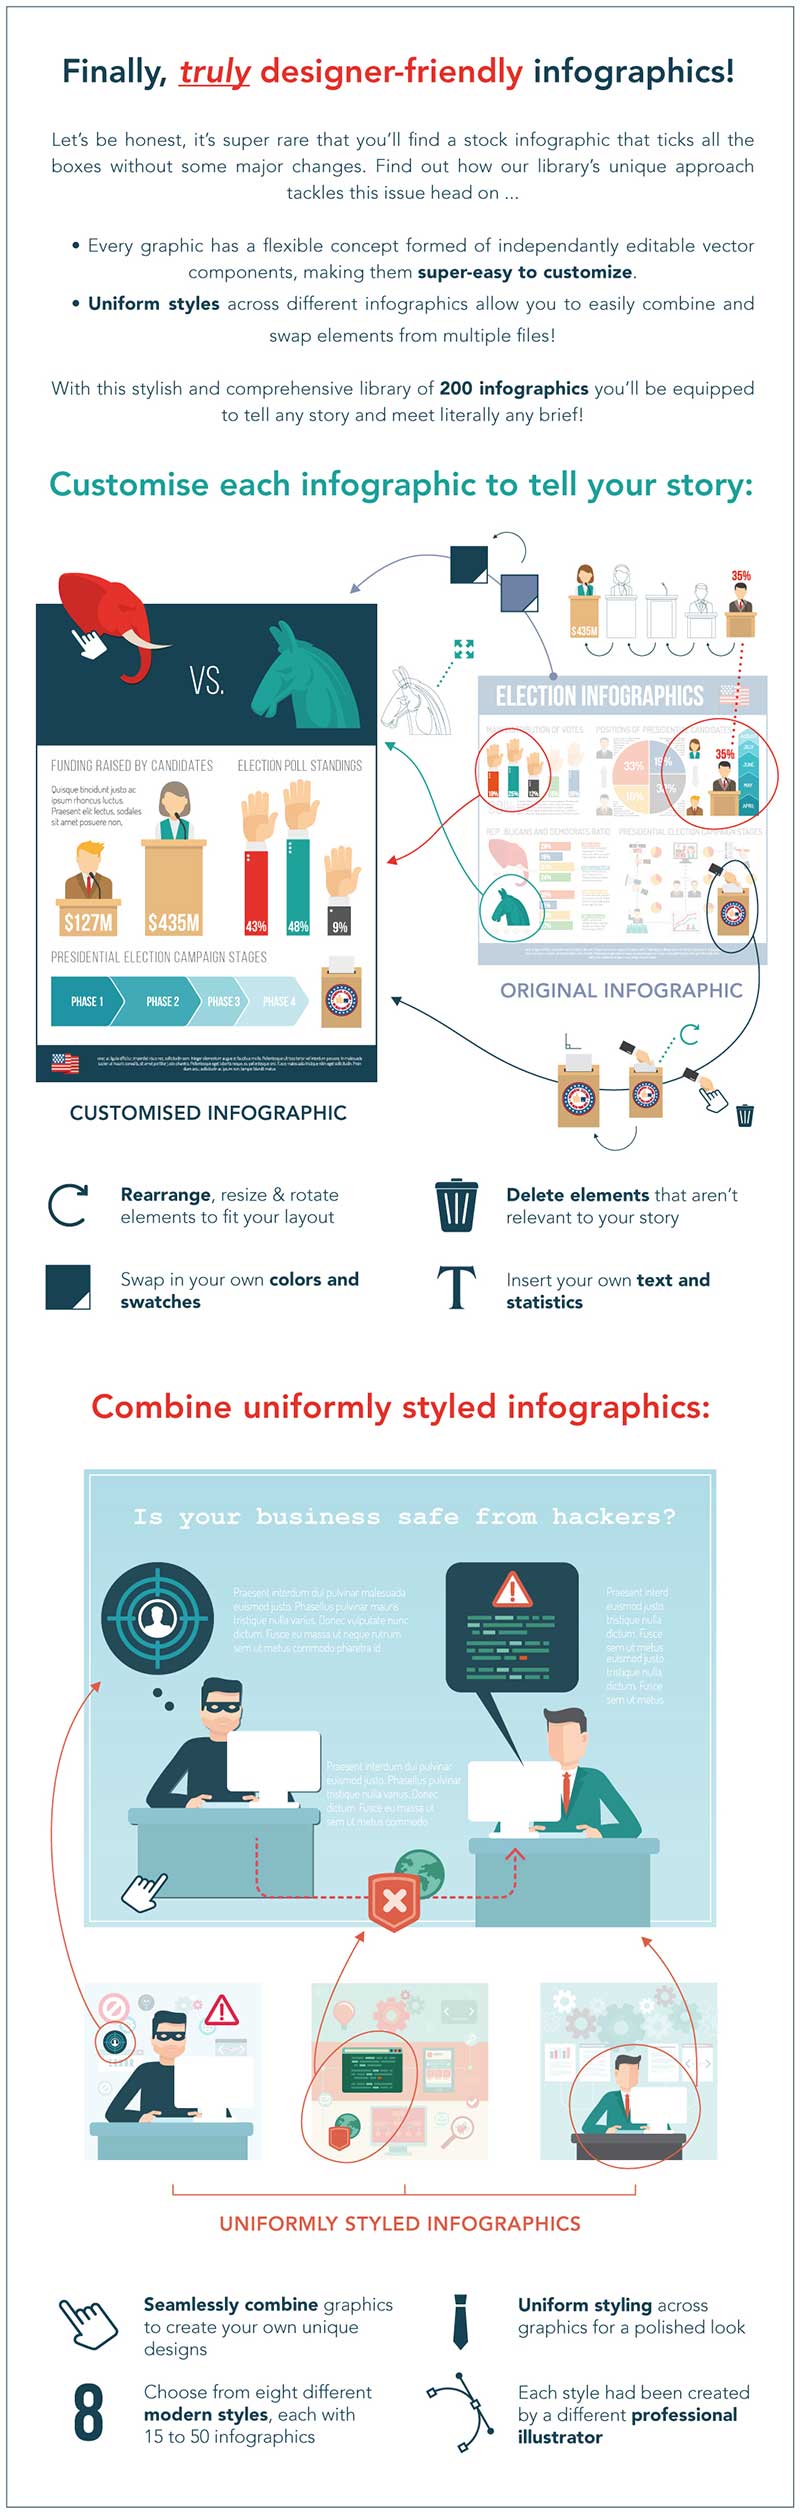 create custom infographic design